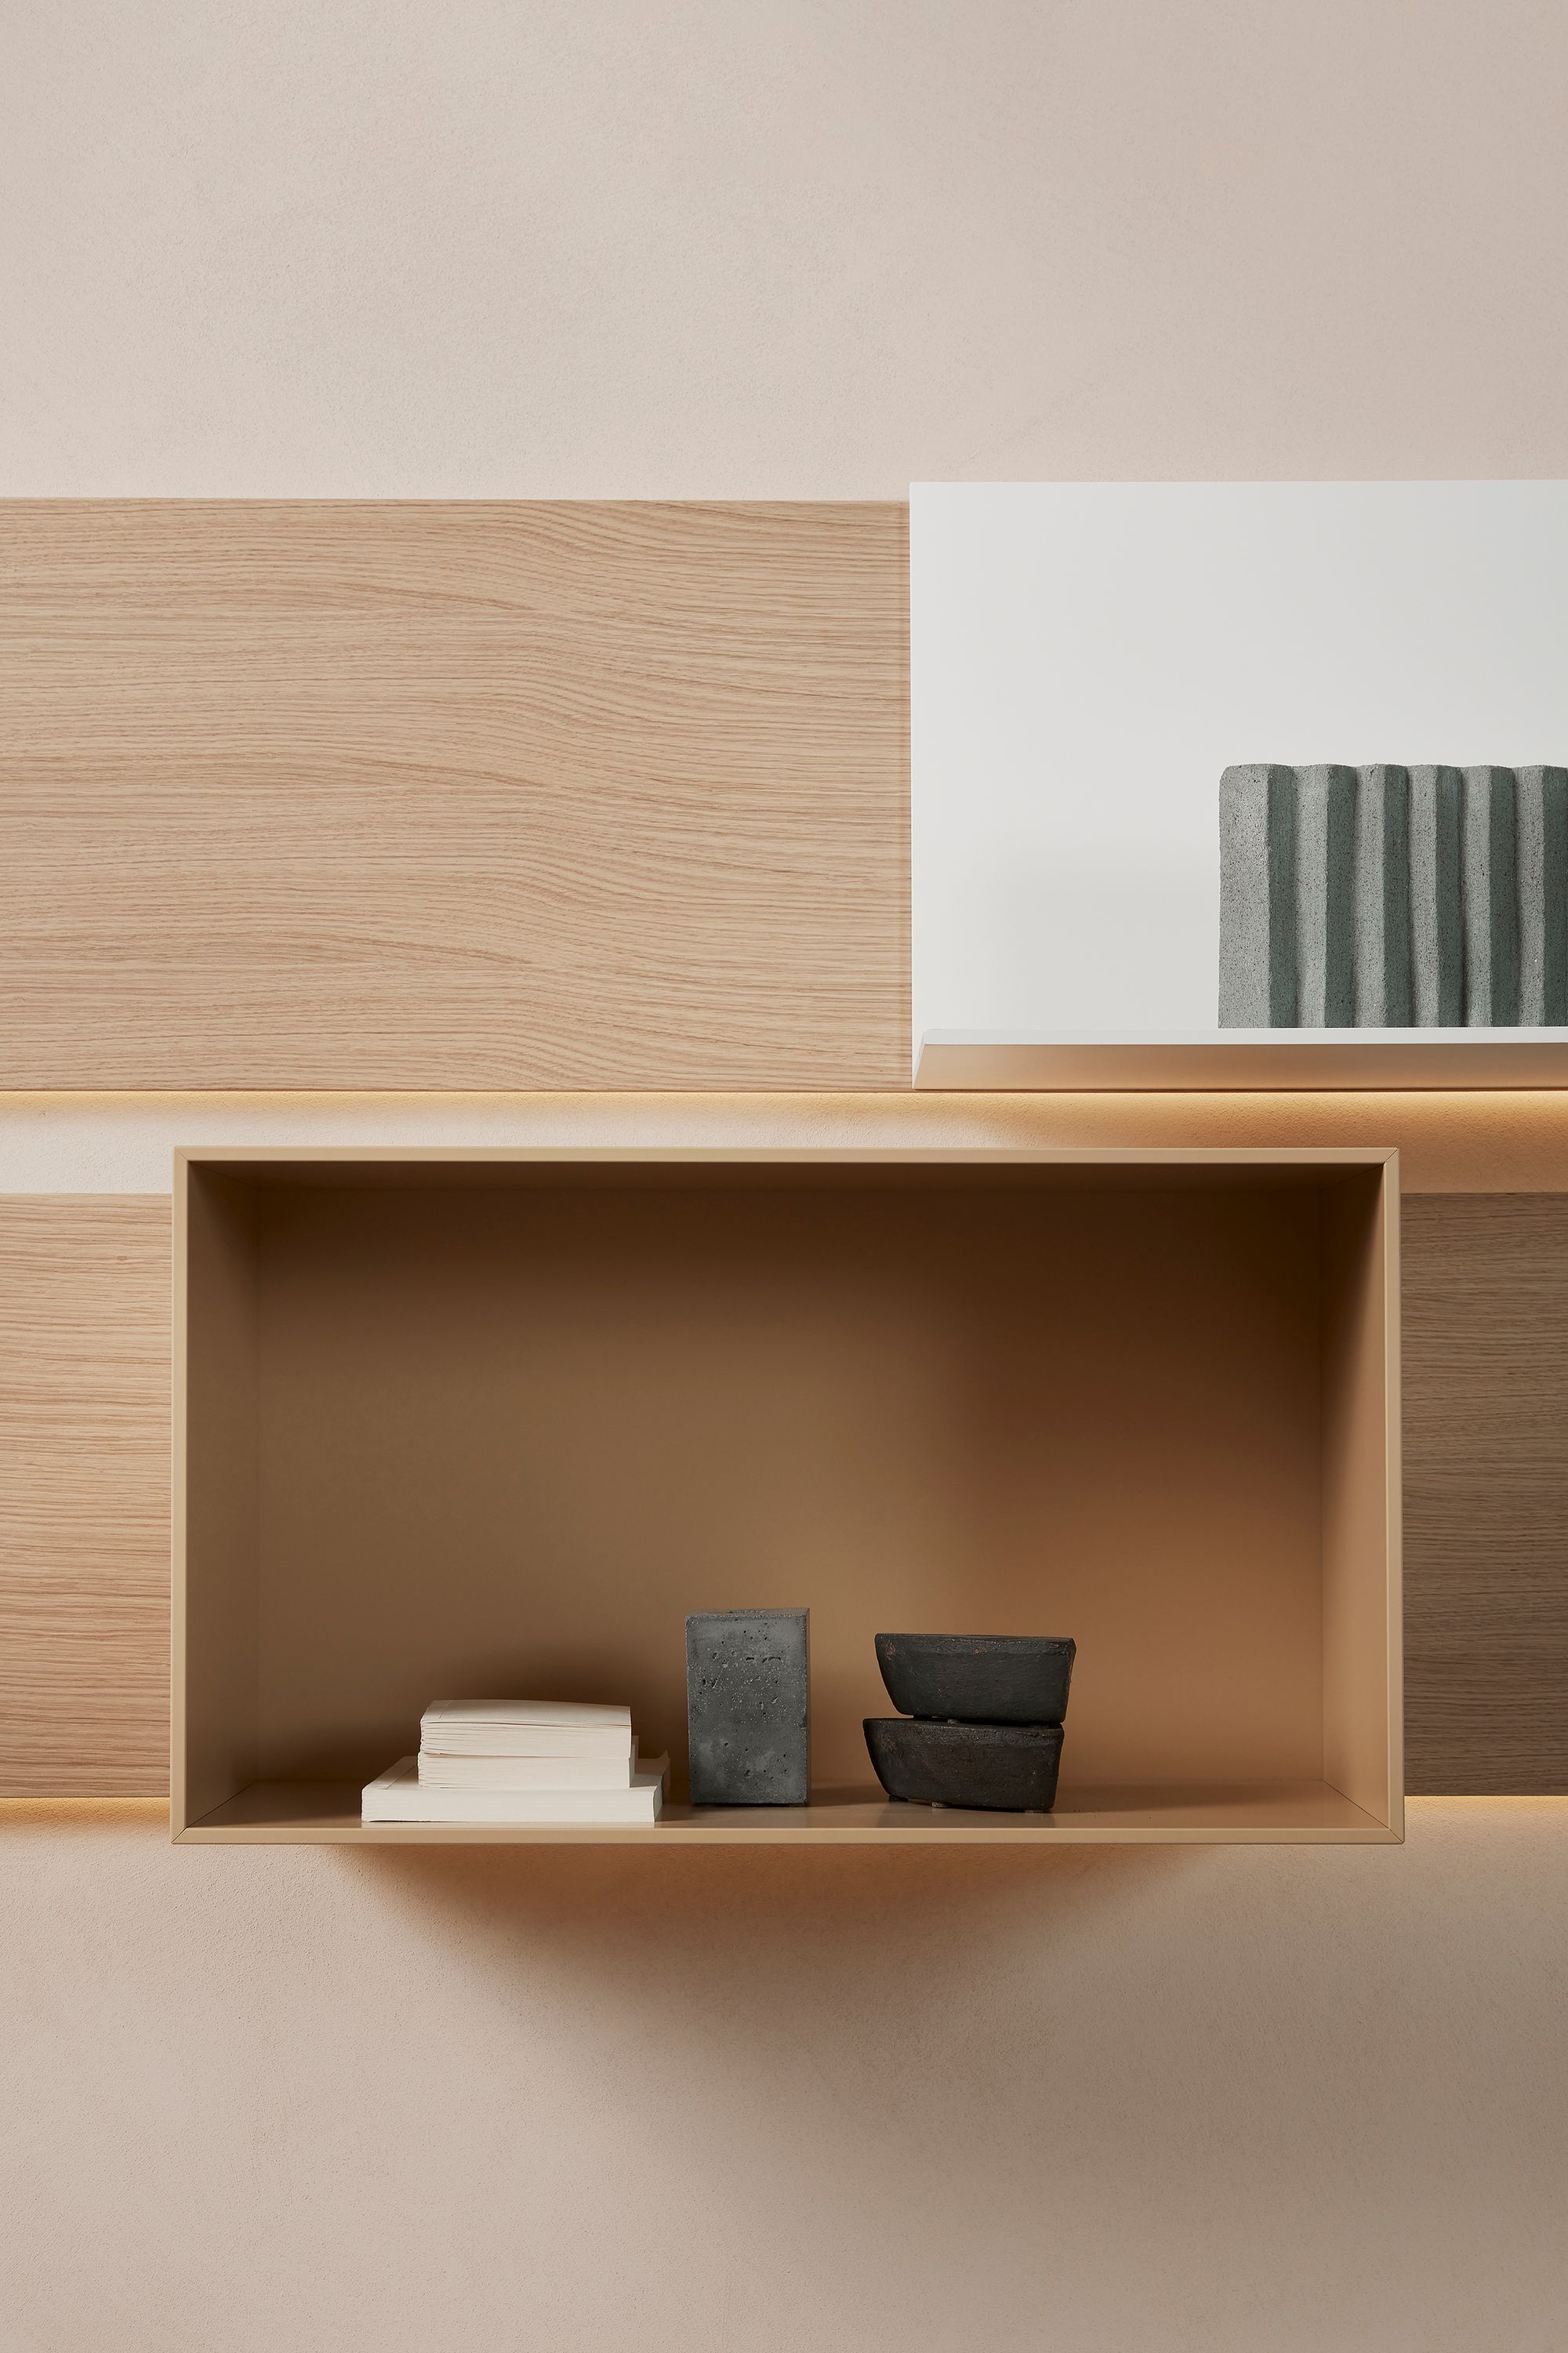 Nueva estantería de diseño modular de mdf italia blanca, negra, madera